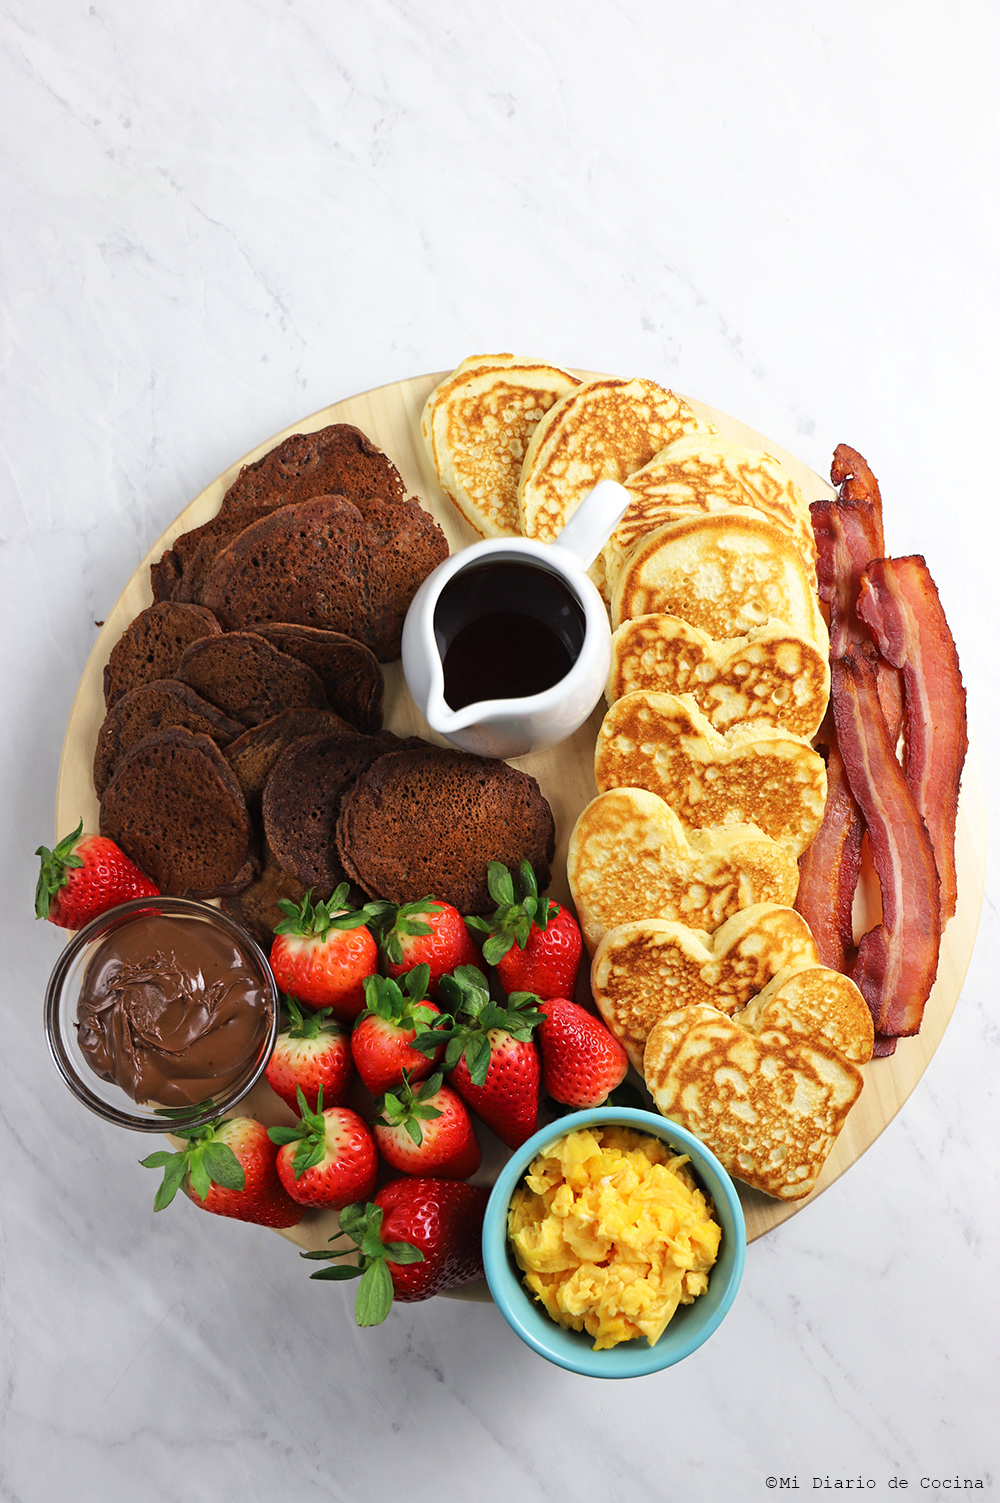 Pancakes for breakfast